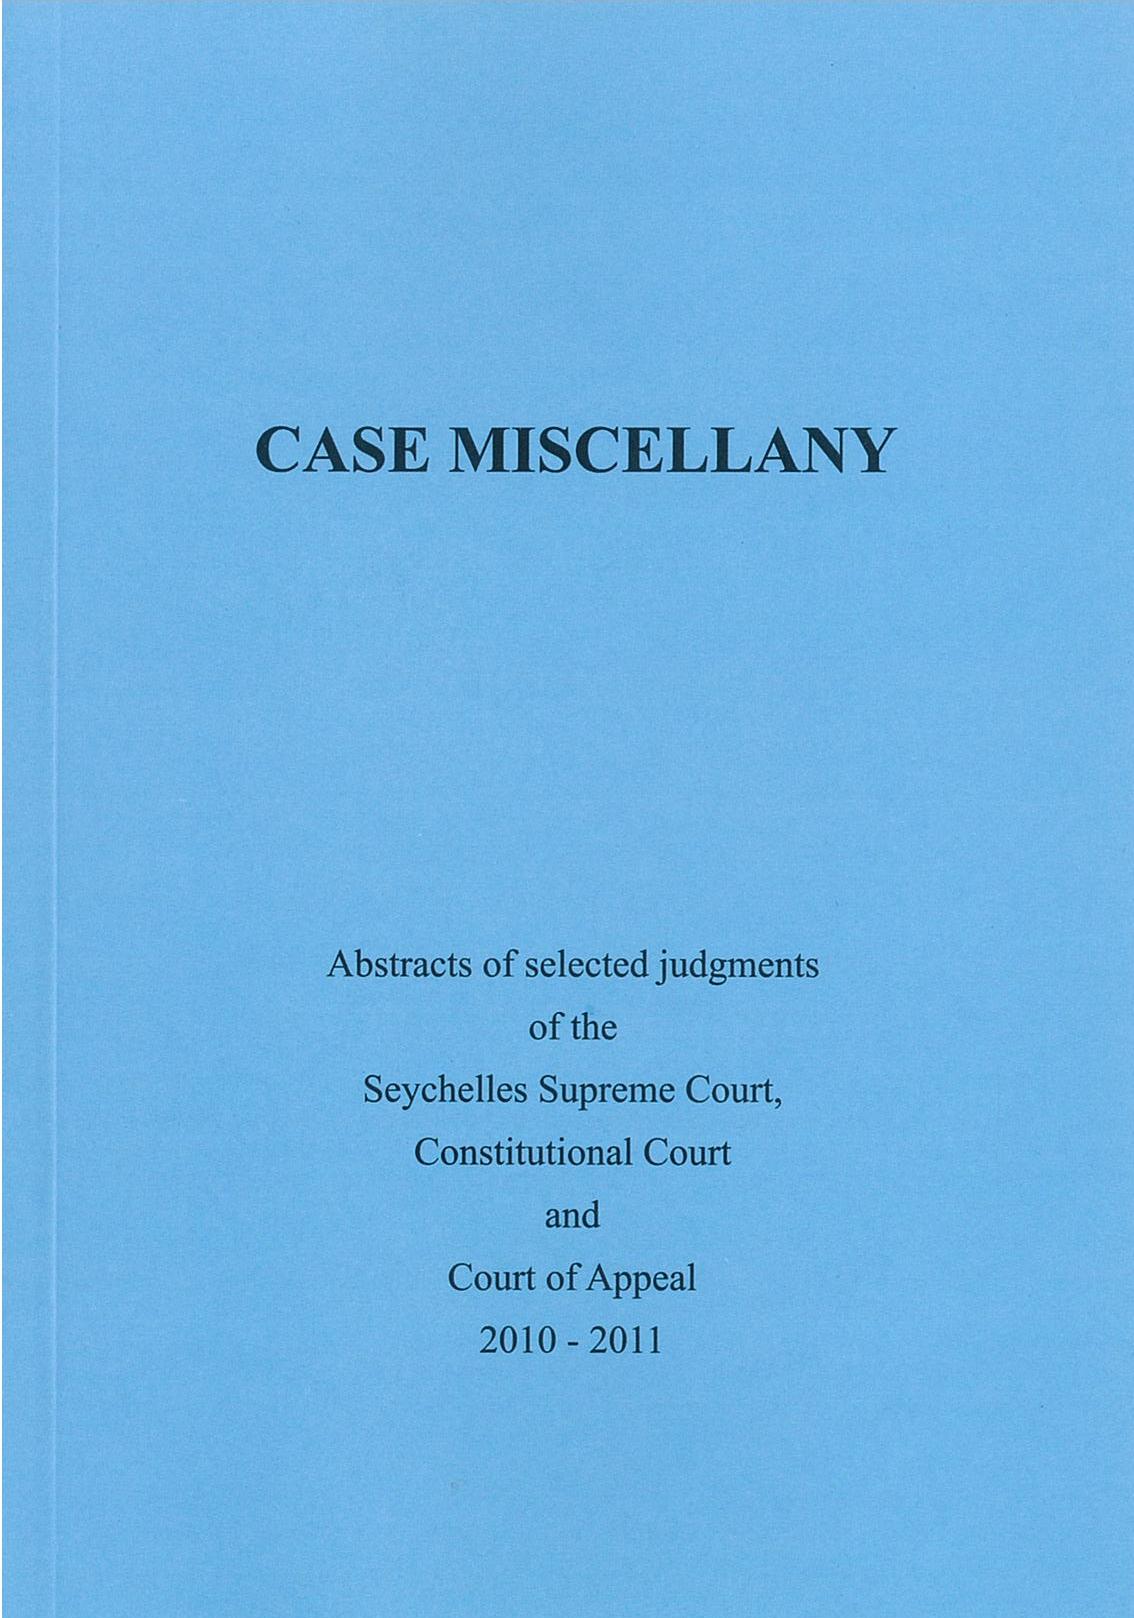 Case Miscellany